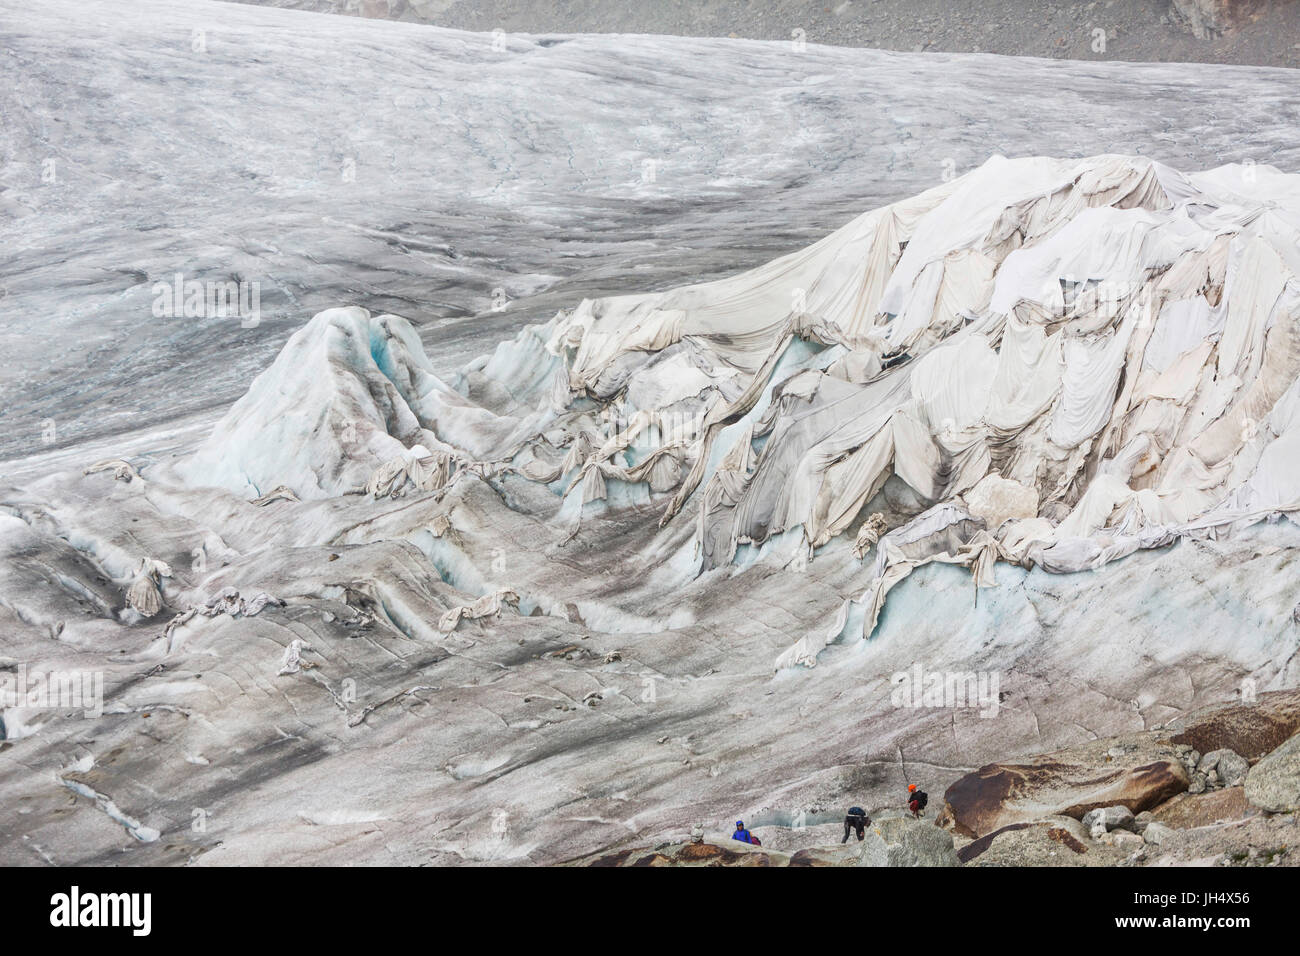 Glacier melt close up: Il ghiacciaio del Rodano è parzialmente schiacciati con dei panni per rallentare la fusione proc Foto Stock